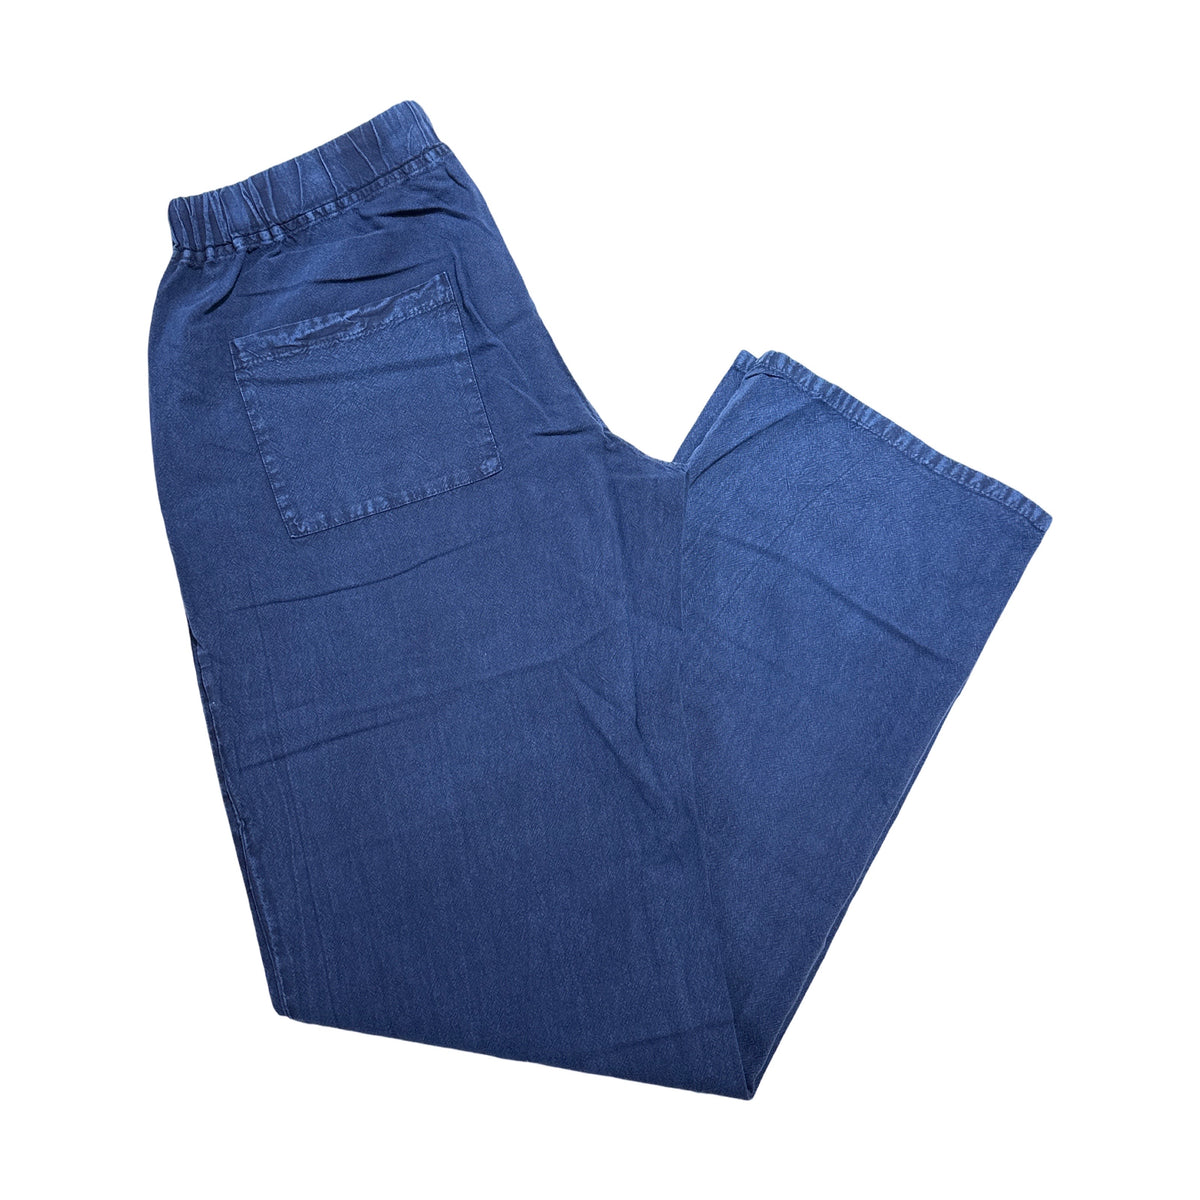 Seaspice Navy Double Pocket Peruvian Cotton Pants - Dudes Boutique